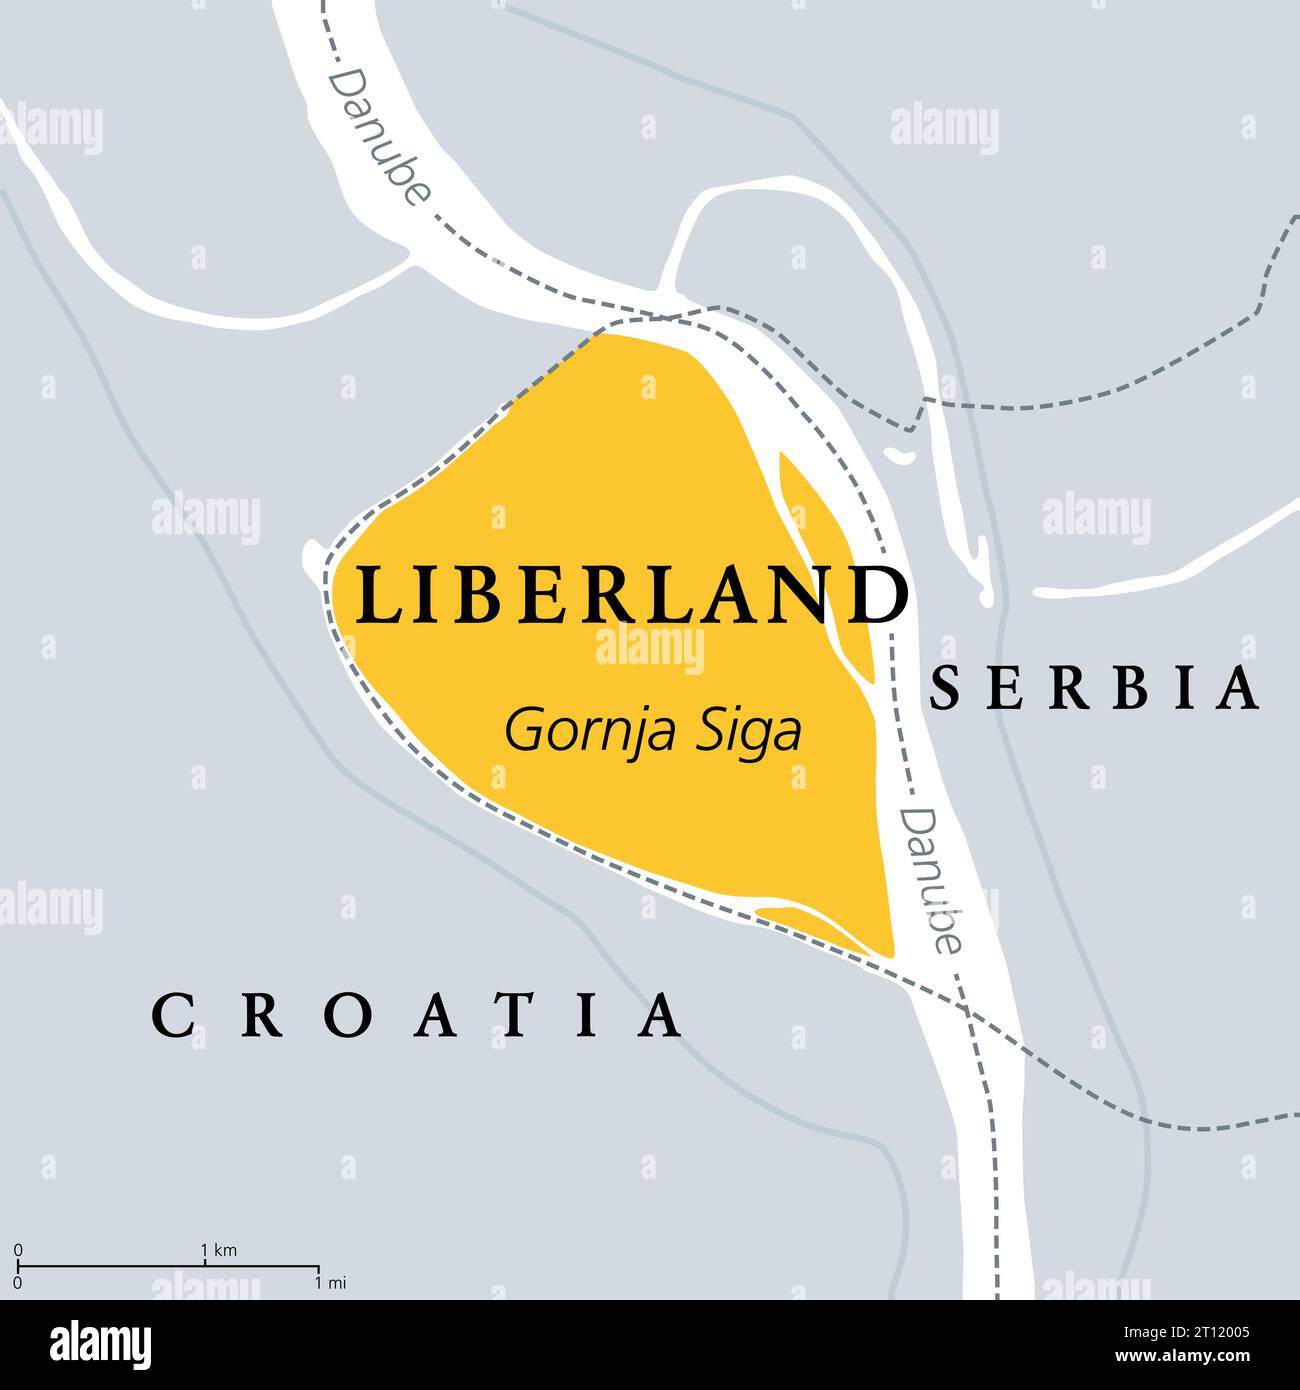 Freie Republik Liberland, politische Karte. Unerkannte Mikronation in Europa, die unbewohnte umstrittene Land an der Donau zwischen Kroatien und Serbien beansprucht. Stockfoto